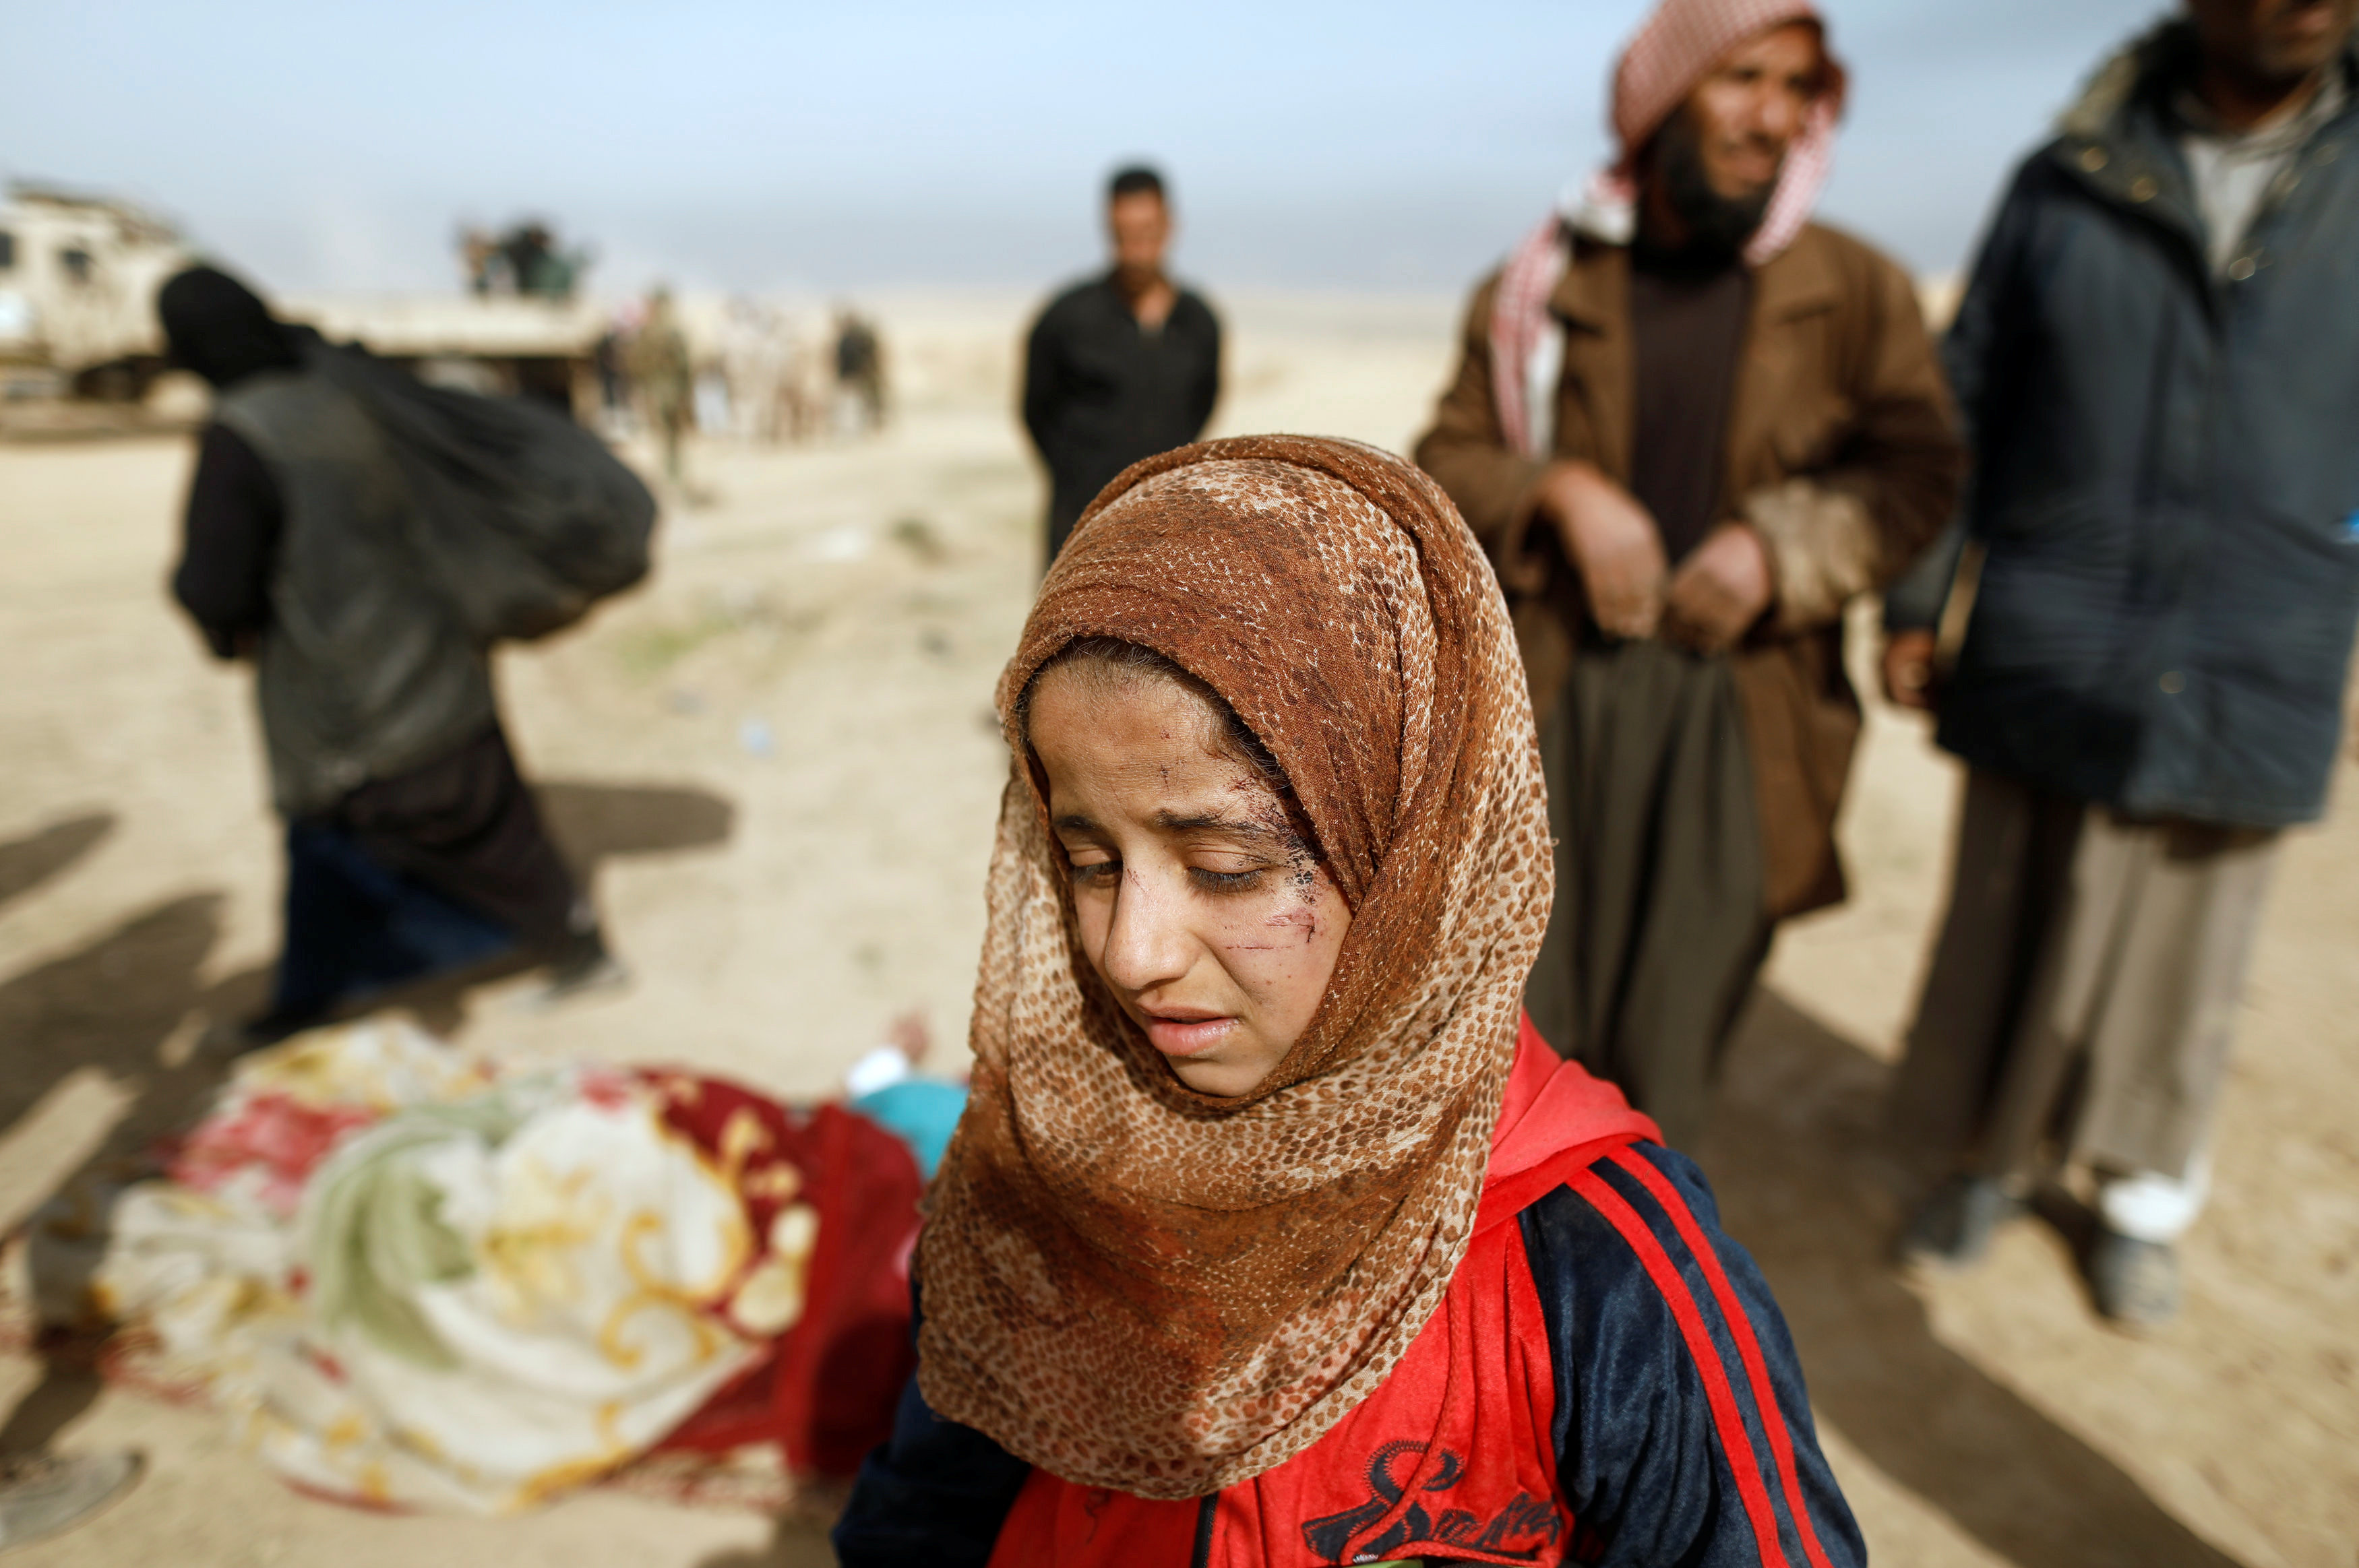 طفلة عراقية مصابة فى وجهها تصل قاعدة القوات الخاصة بعد هروبها من داعش